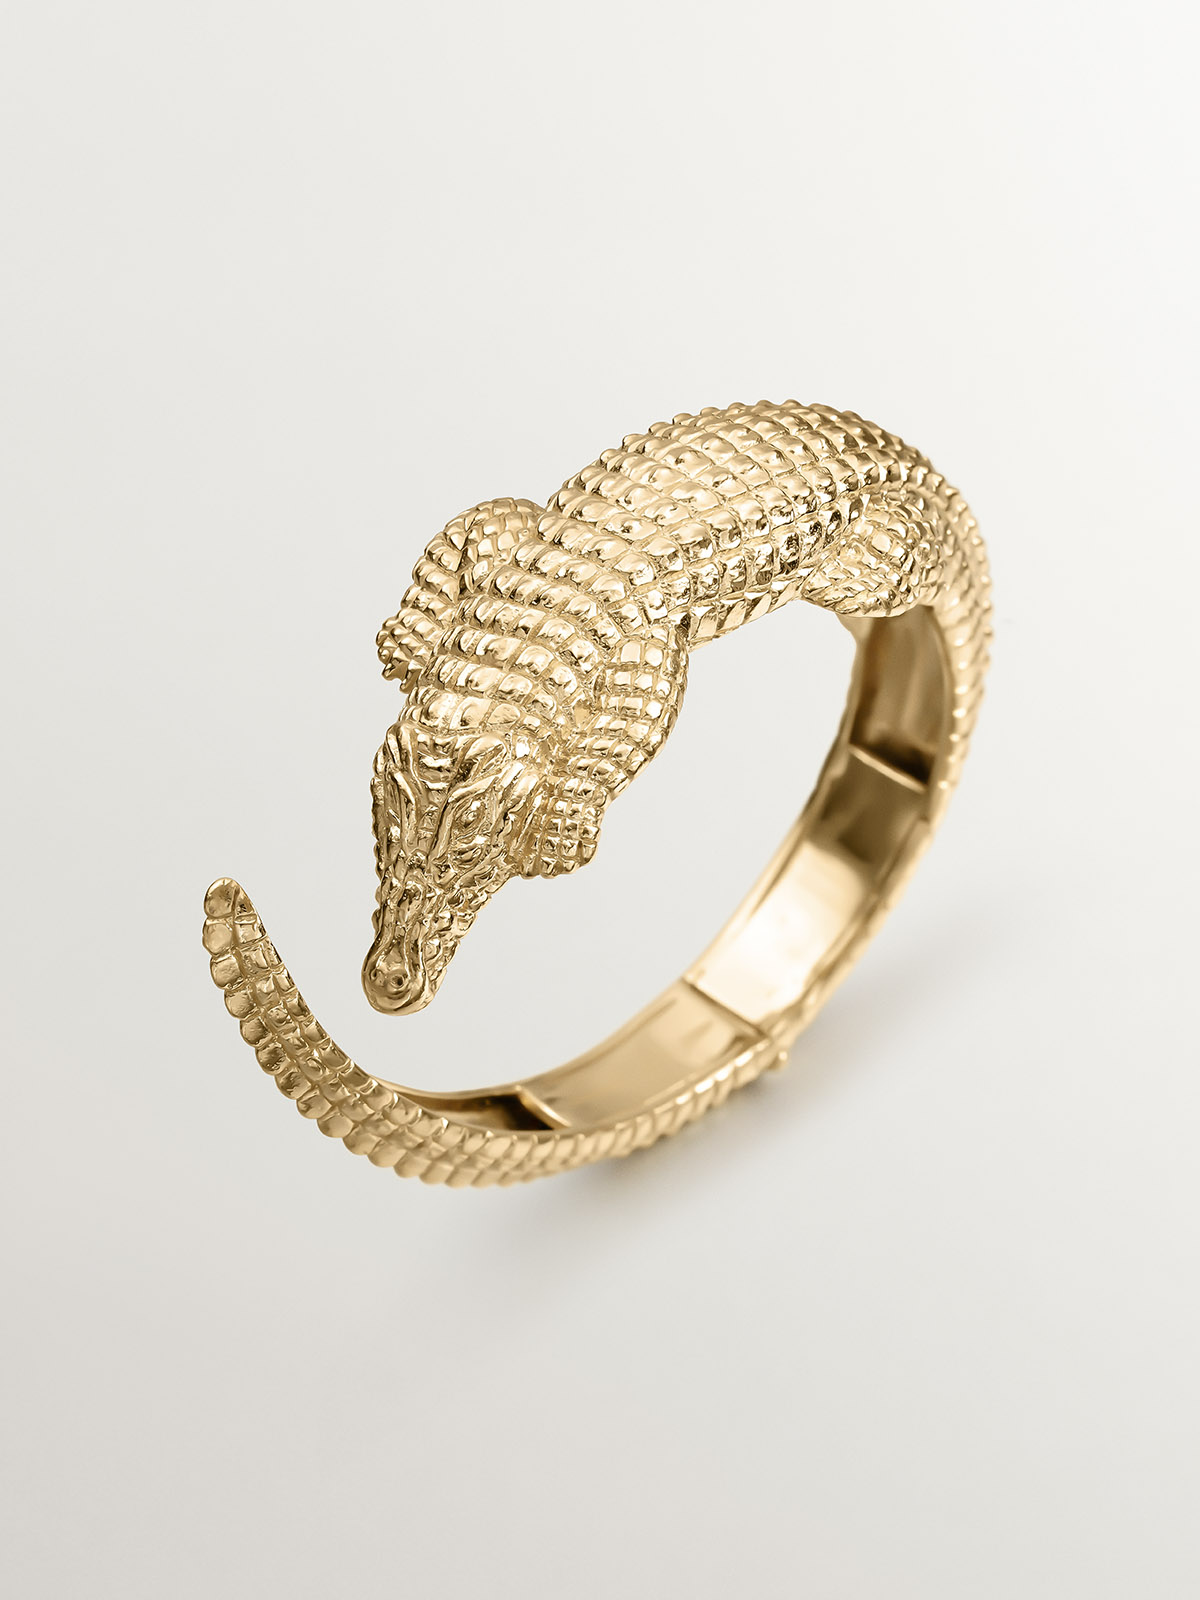 Bracelet en argent 925 plaqué en or jaune 18K en forme de crocodile